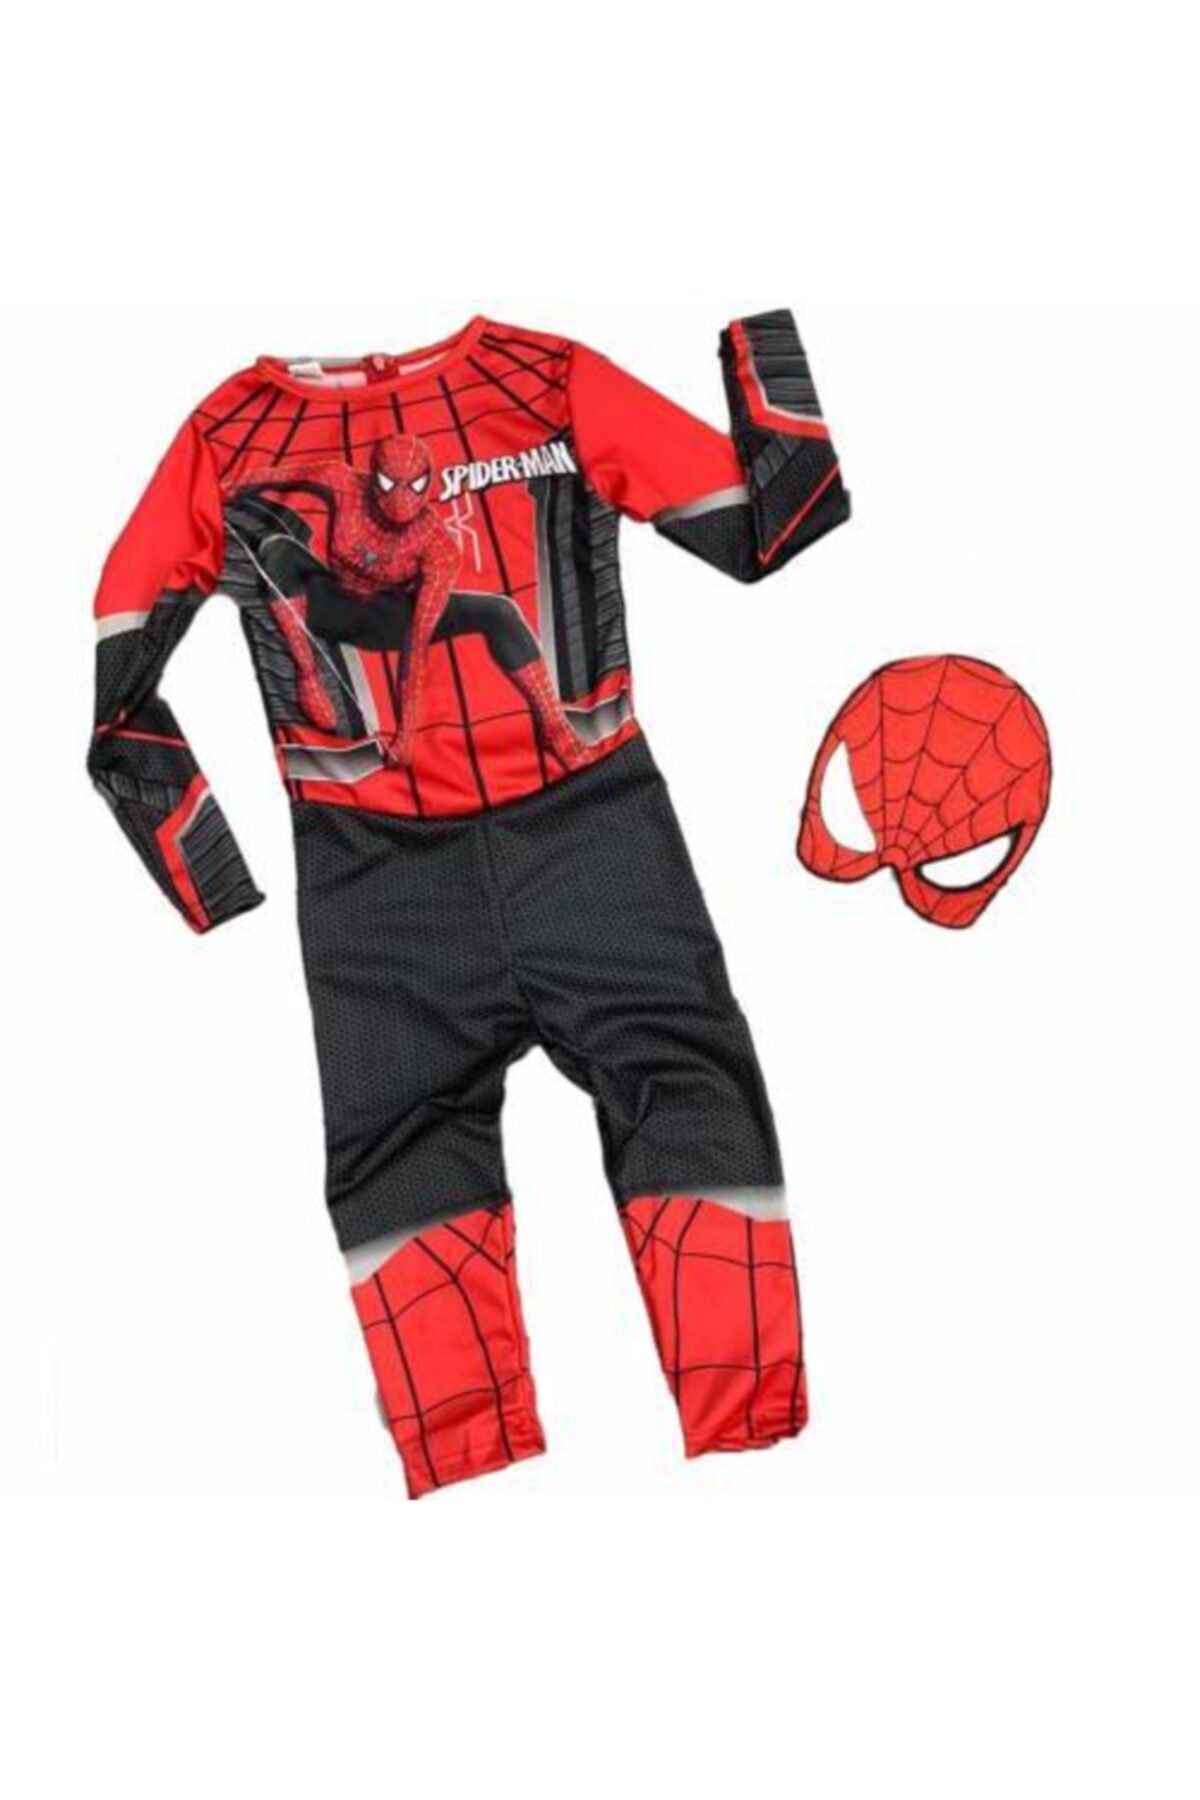 Mashotrend Yeni Siyah Kırmızı Spiderman Çocuk Kostümü - Spiderman Kostümü Maskeli Örümcek Adam Çocuk Kostümü